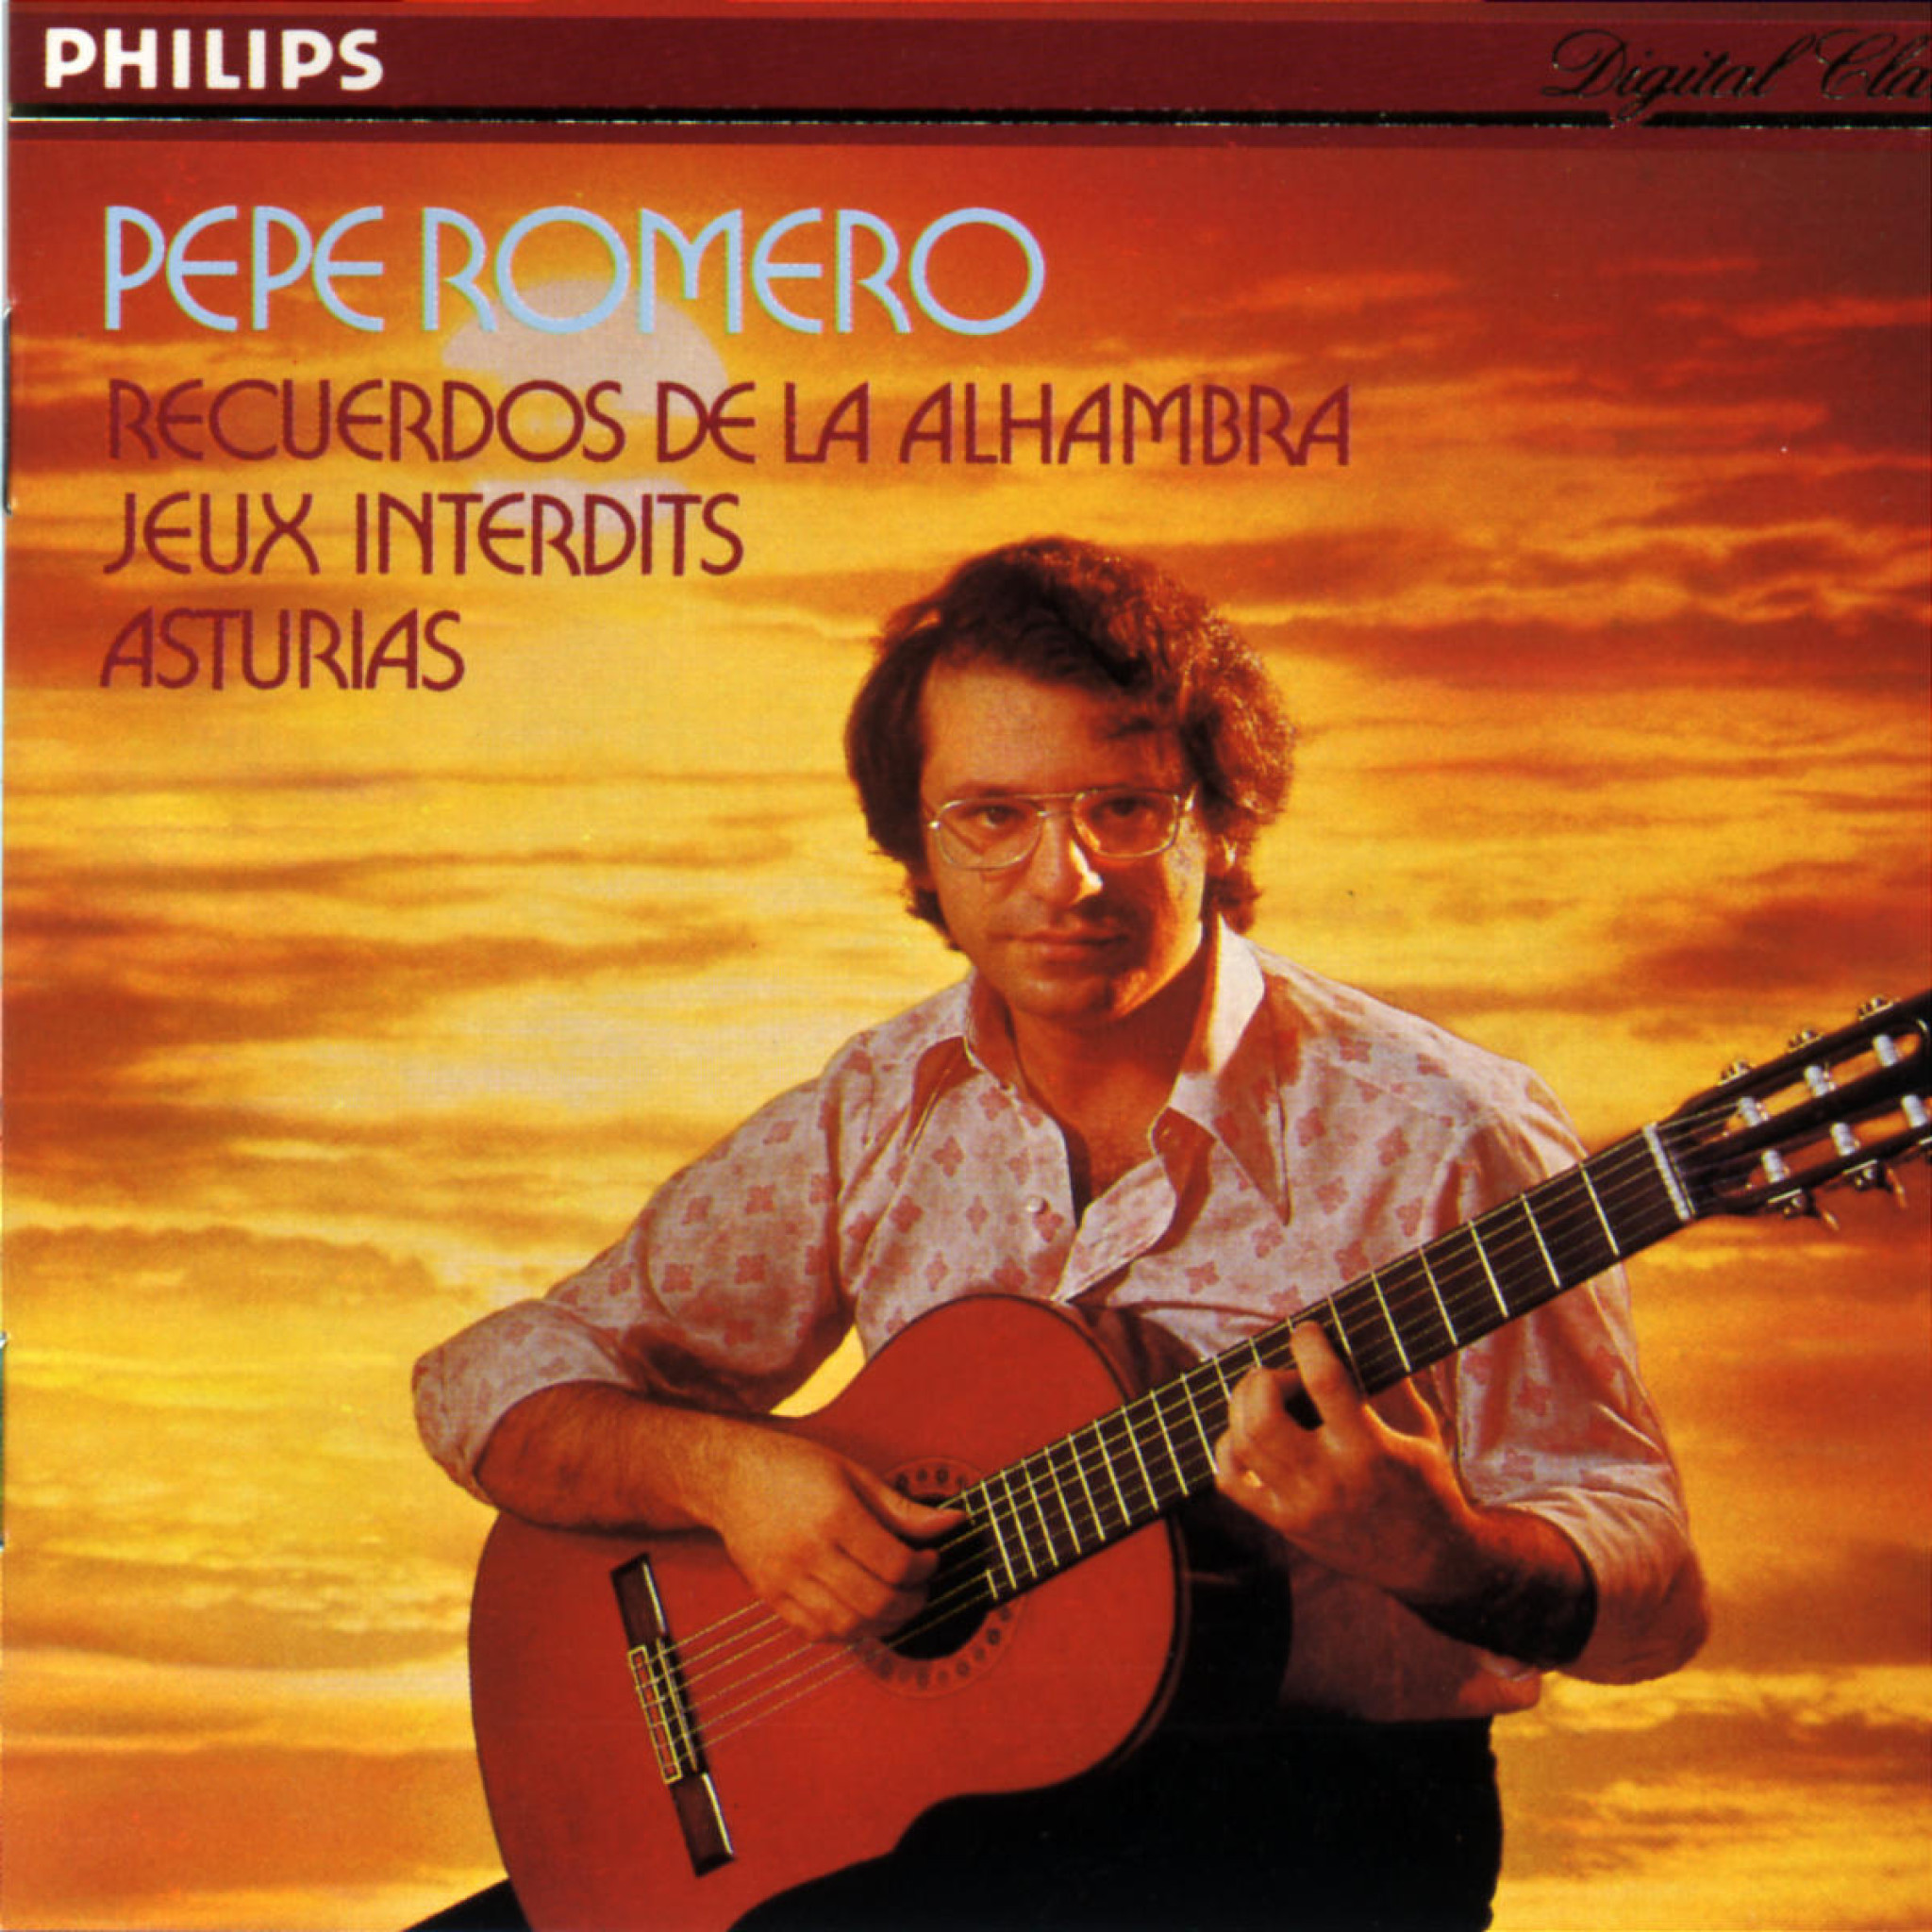 SPANISH GUITAR MUSIC PEPE ROMERO